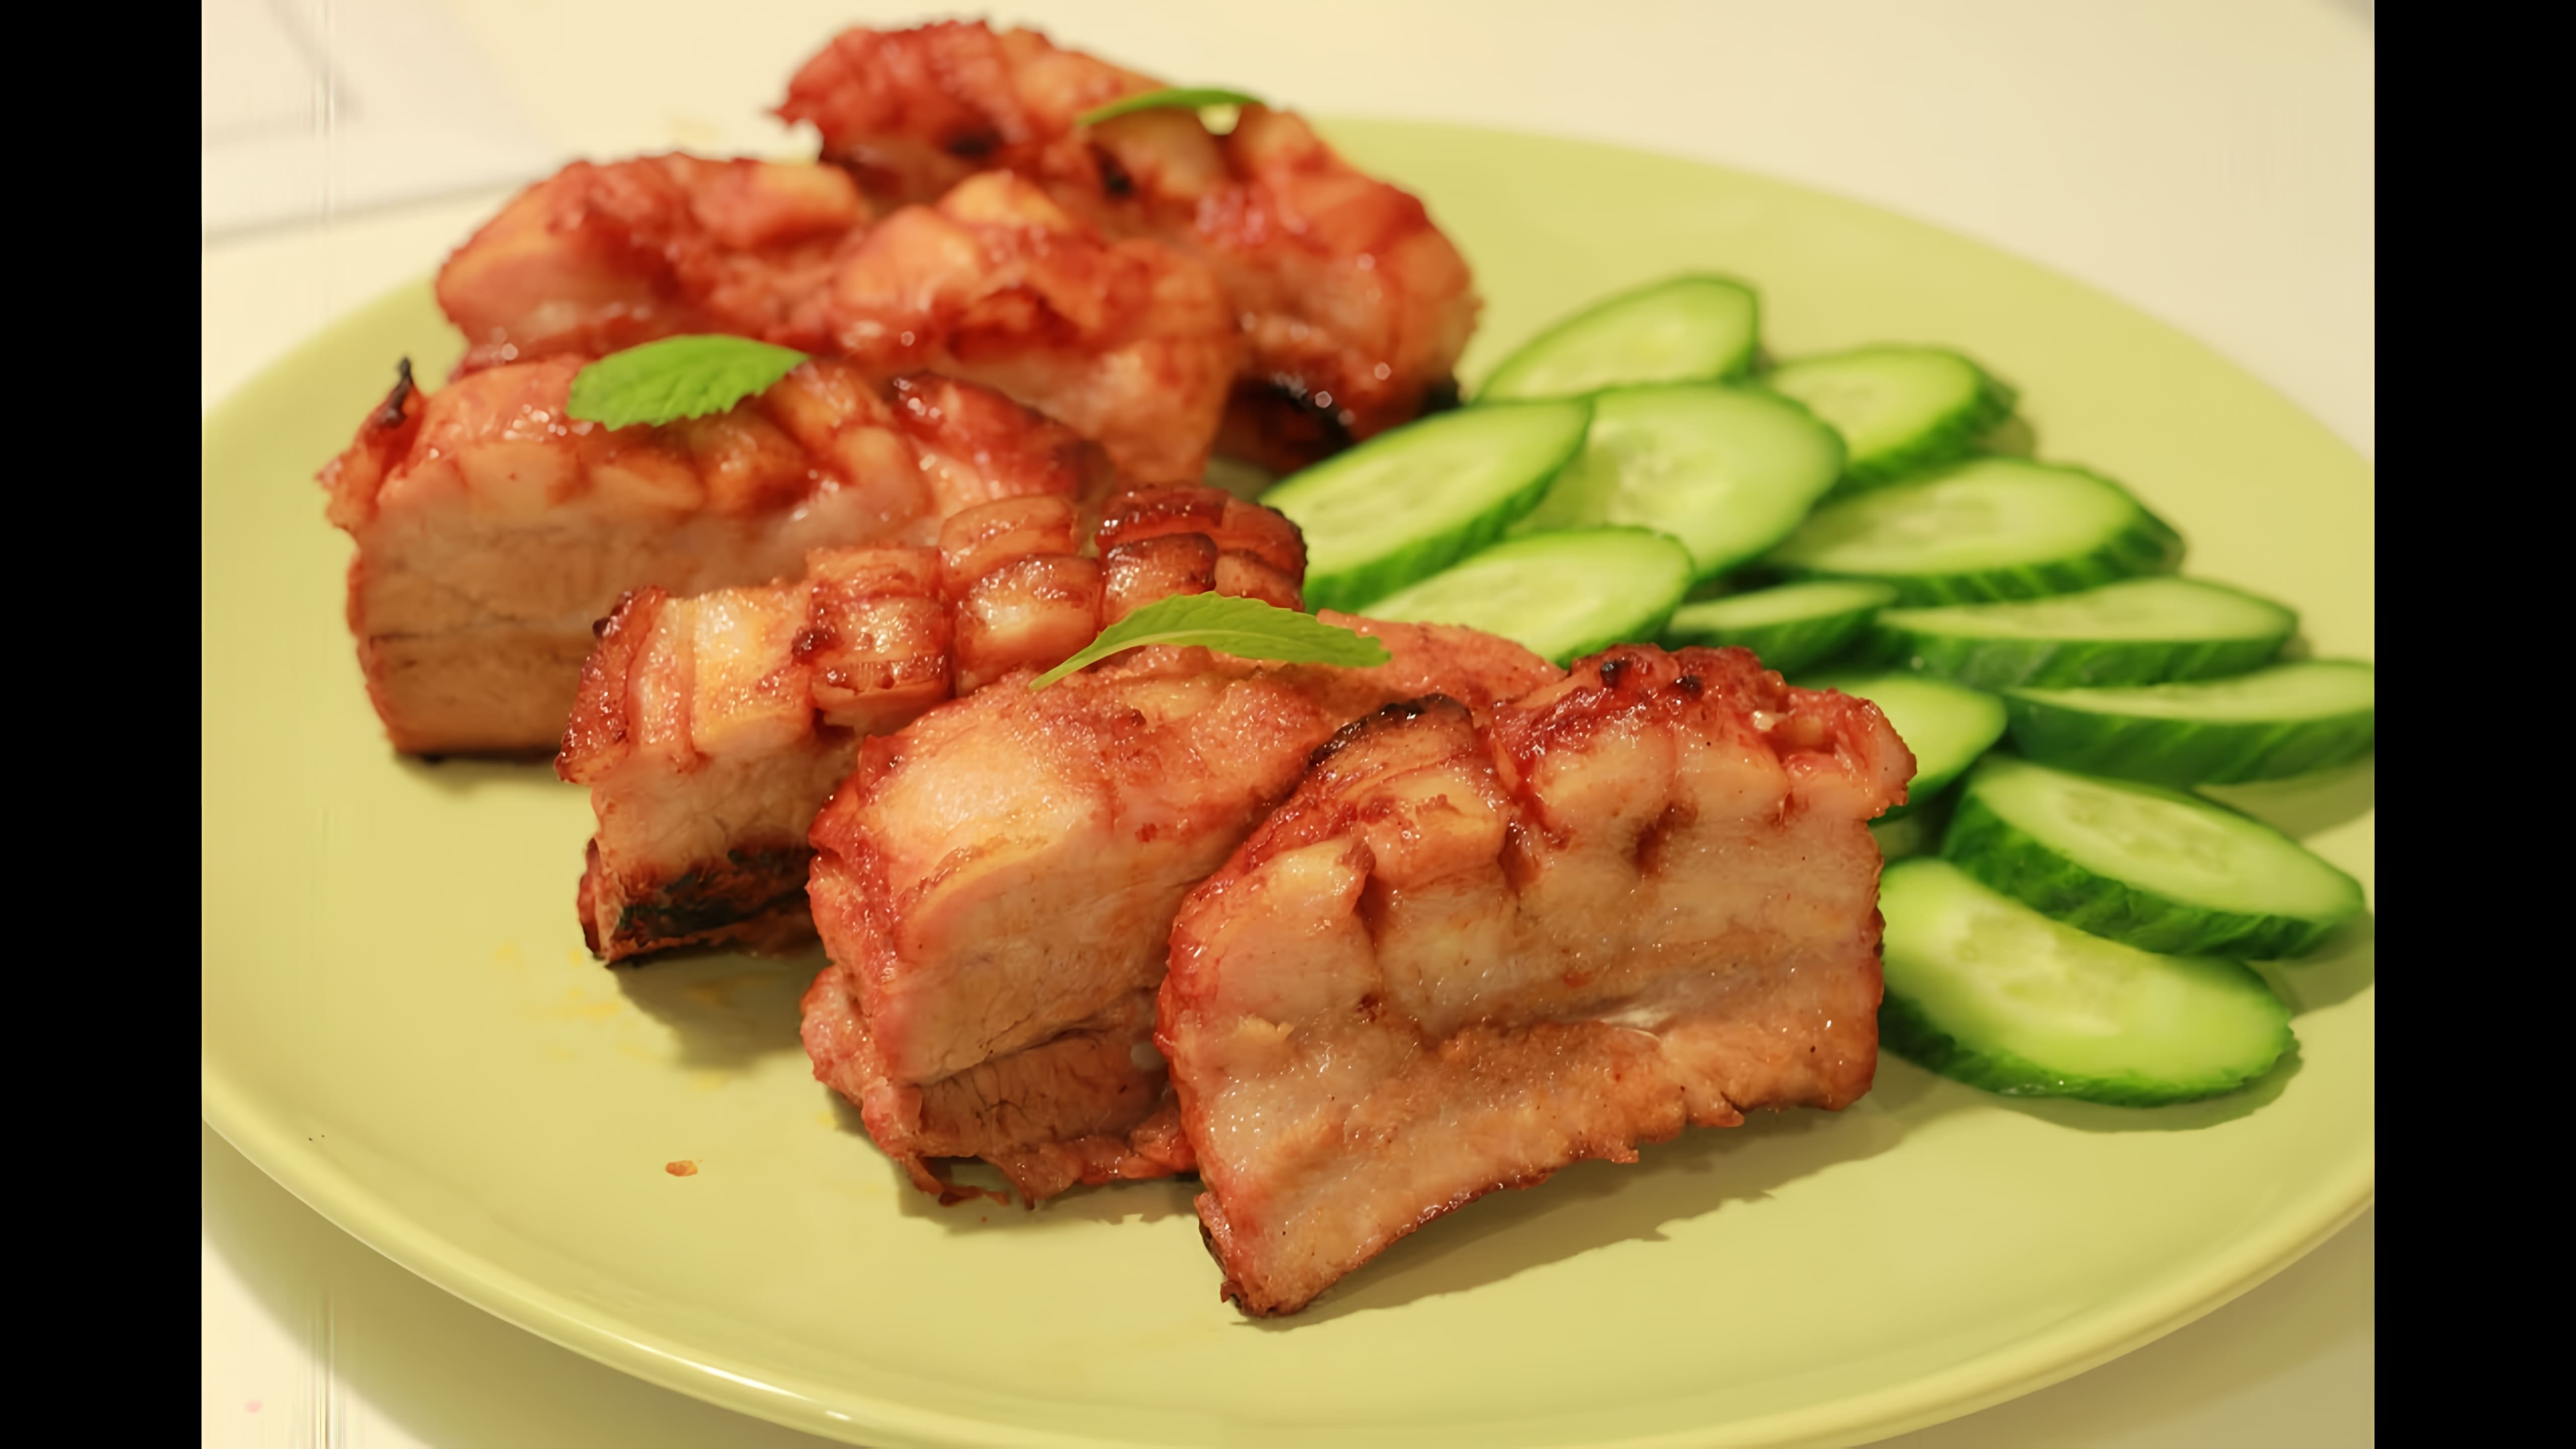 В этом видео демонстрируется рецепт приготовления свиных ребрышек в духовке